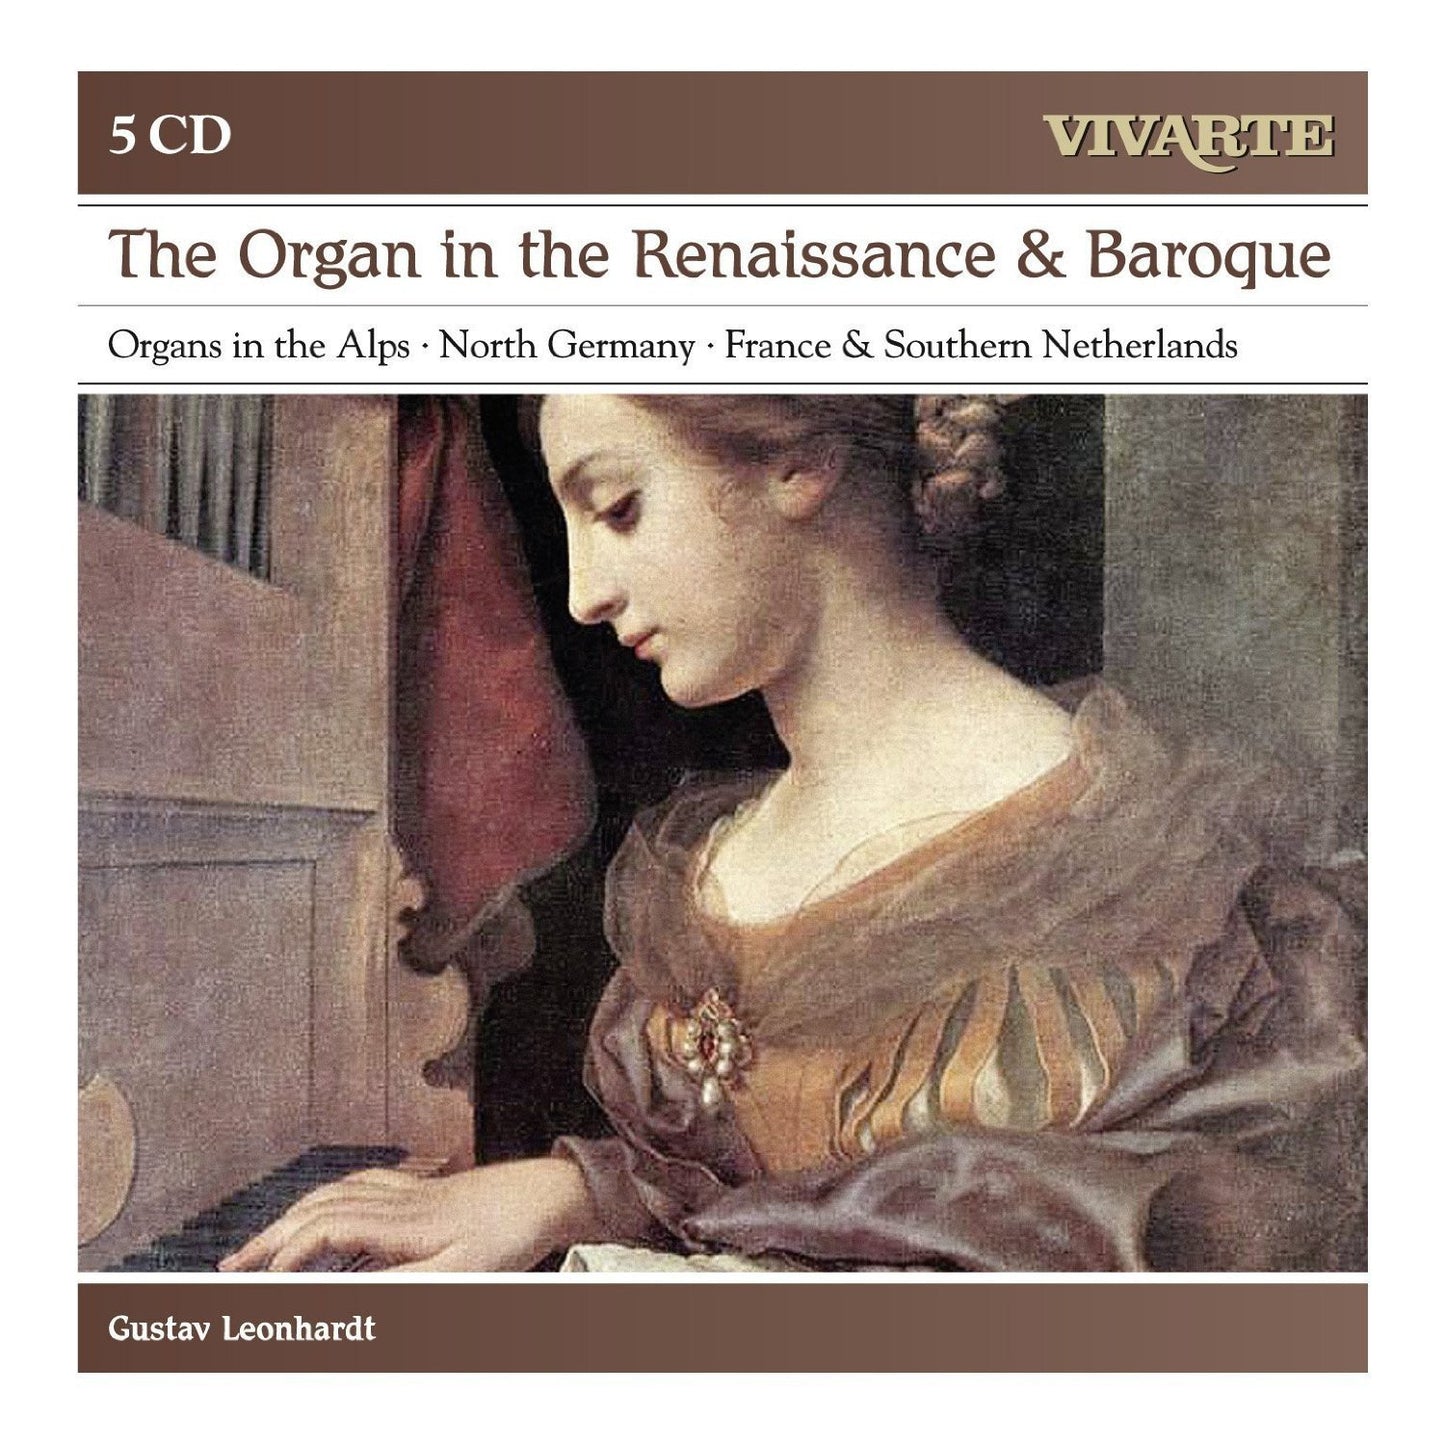 THE ORGAN IN RENAISSANCE & BAROQUE - Gustav Leonhardt (5 CDs)